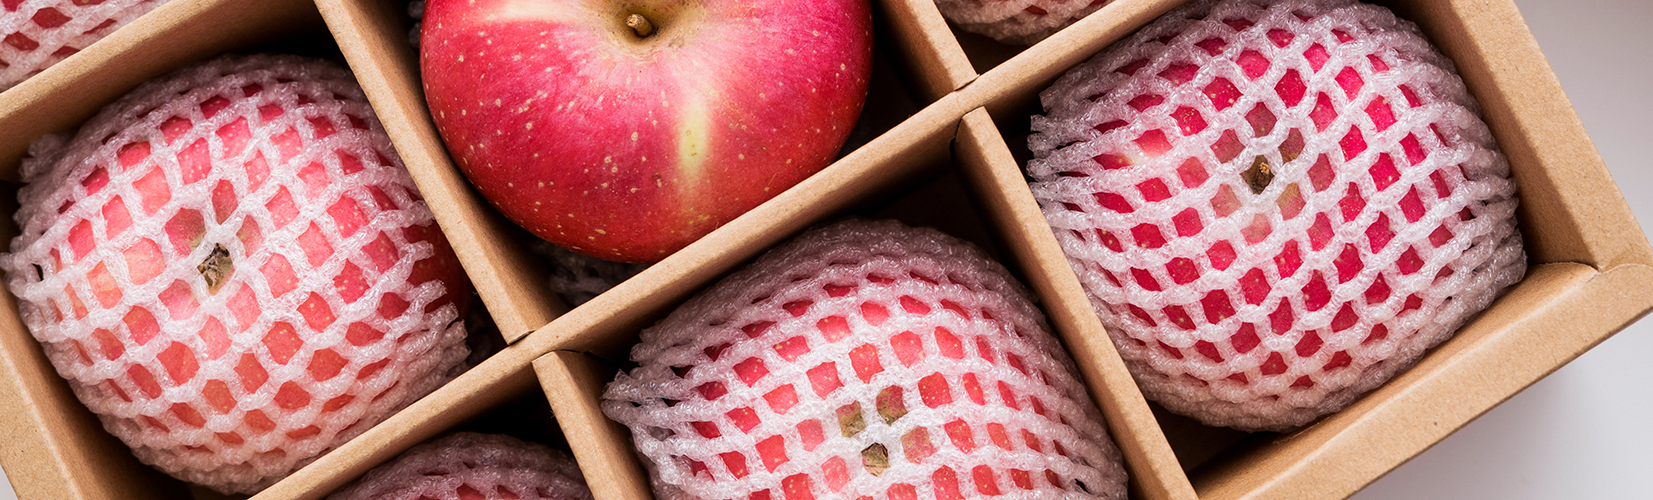 Apples with SleevIt® Foam Mesh Sleeves in a cardboard box